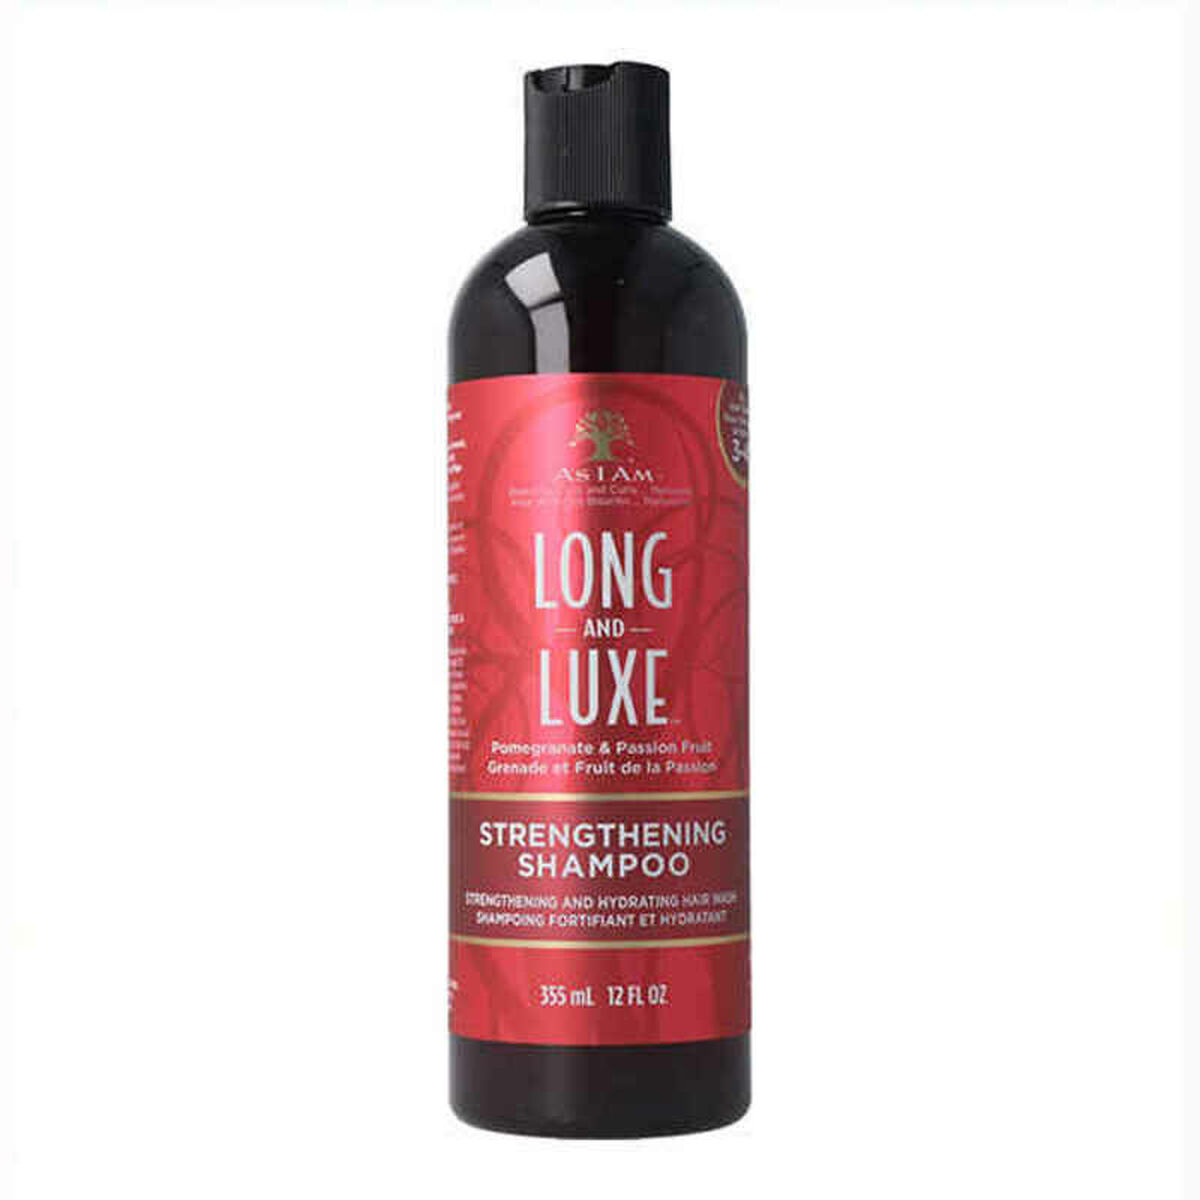 Osta tuote Shampoo Long And Luxe Strengt As I Am (355 ml) verkkokaupastamme Korhone: Terveys & Kauneus 20% alennuksella koodilla KORHONE